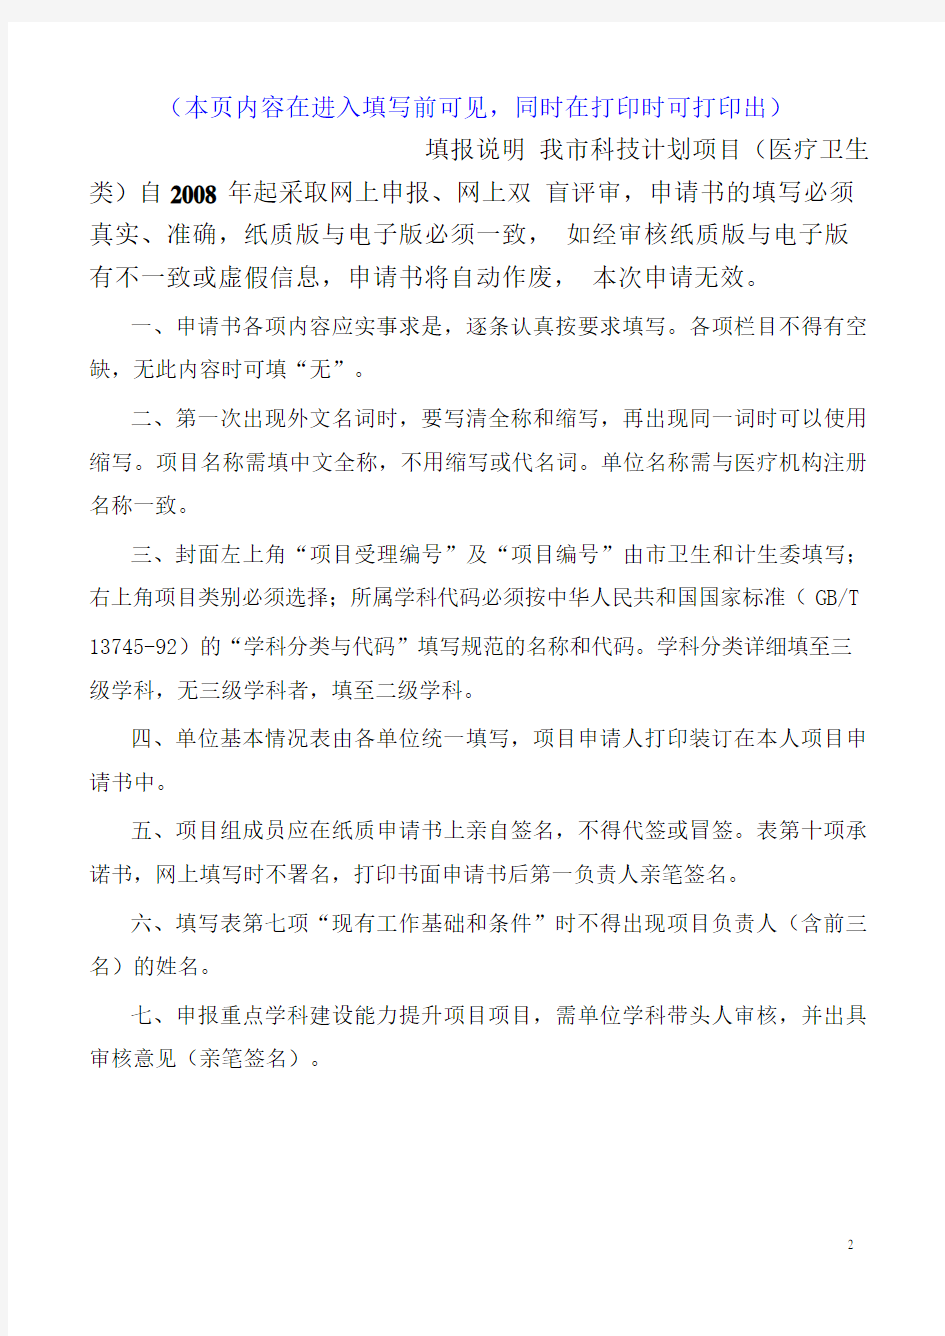 2015年度深圳市卫生计生系统科研项目申请书电子版样稿